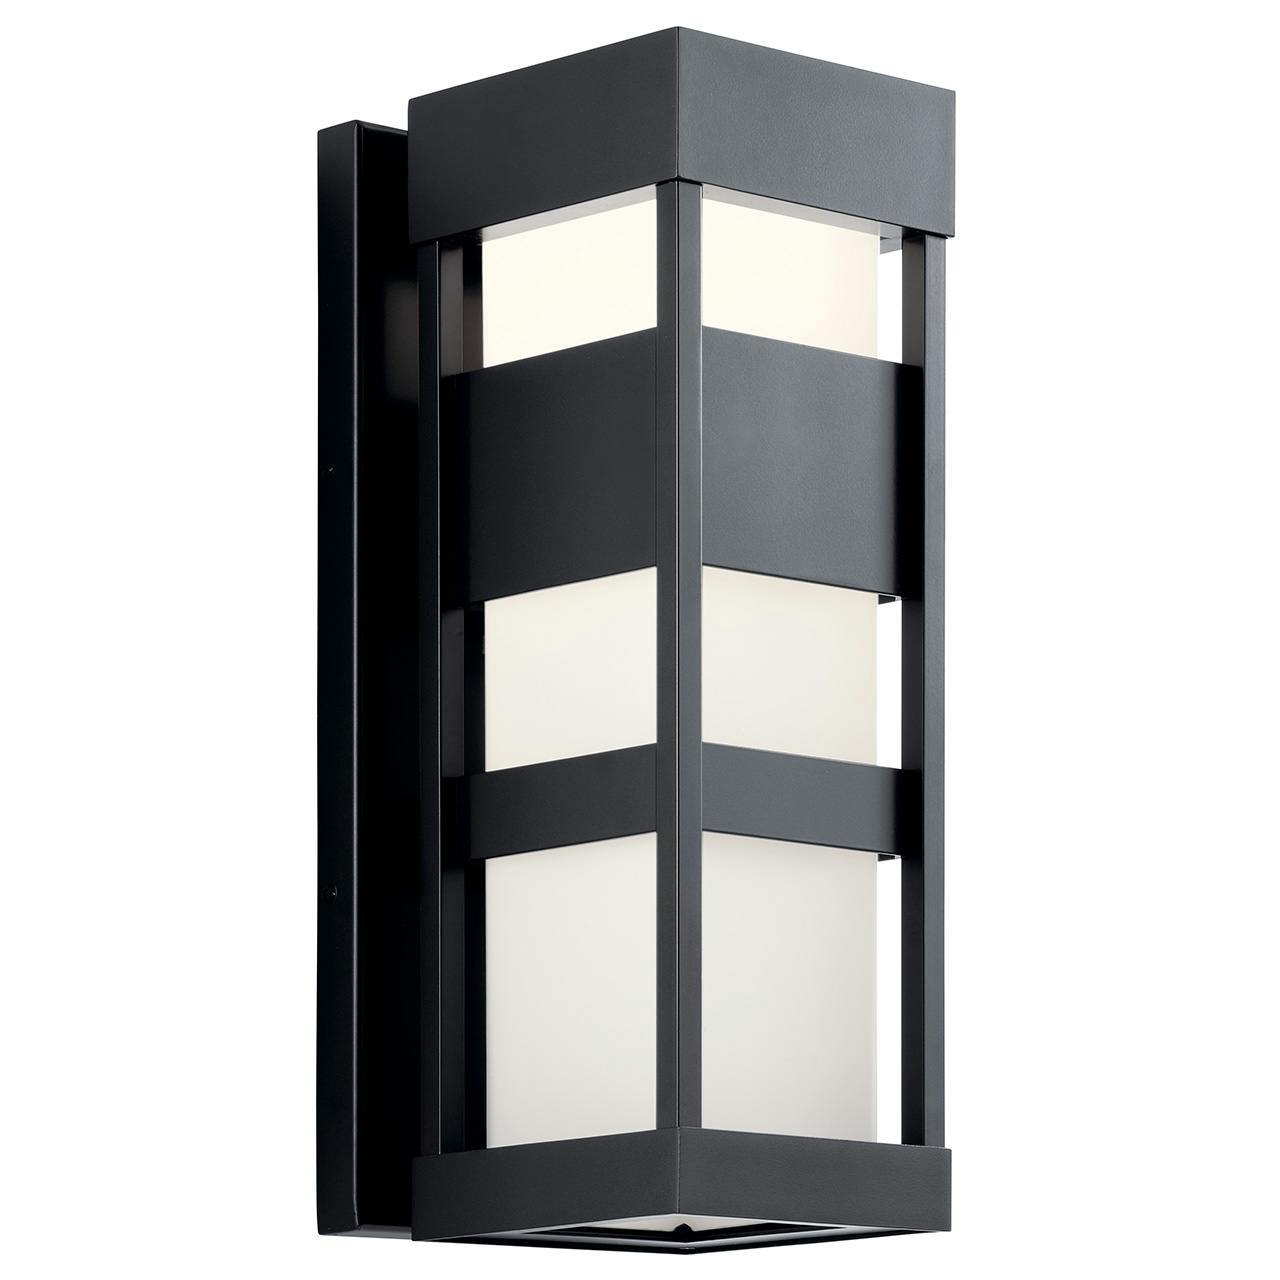 Ryler LED 3000K 18" Wall Light Black on a white background